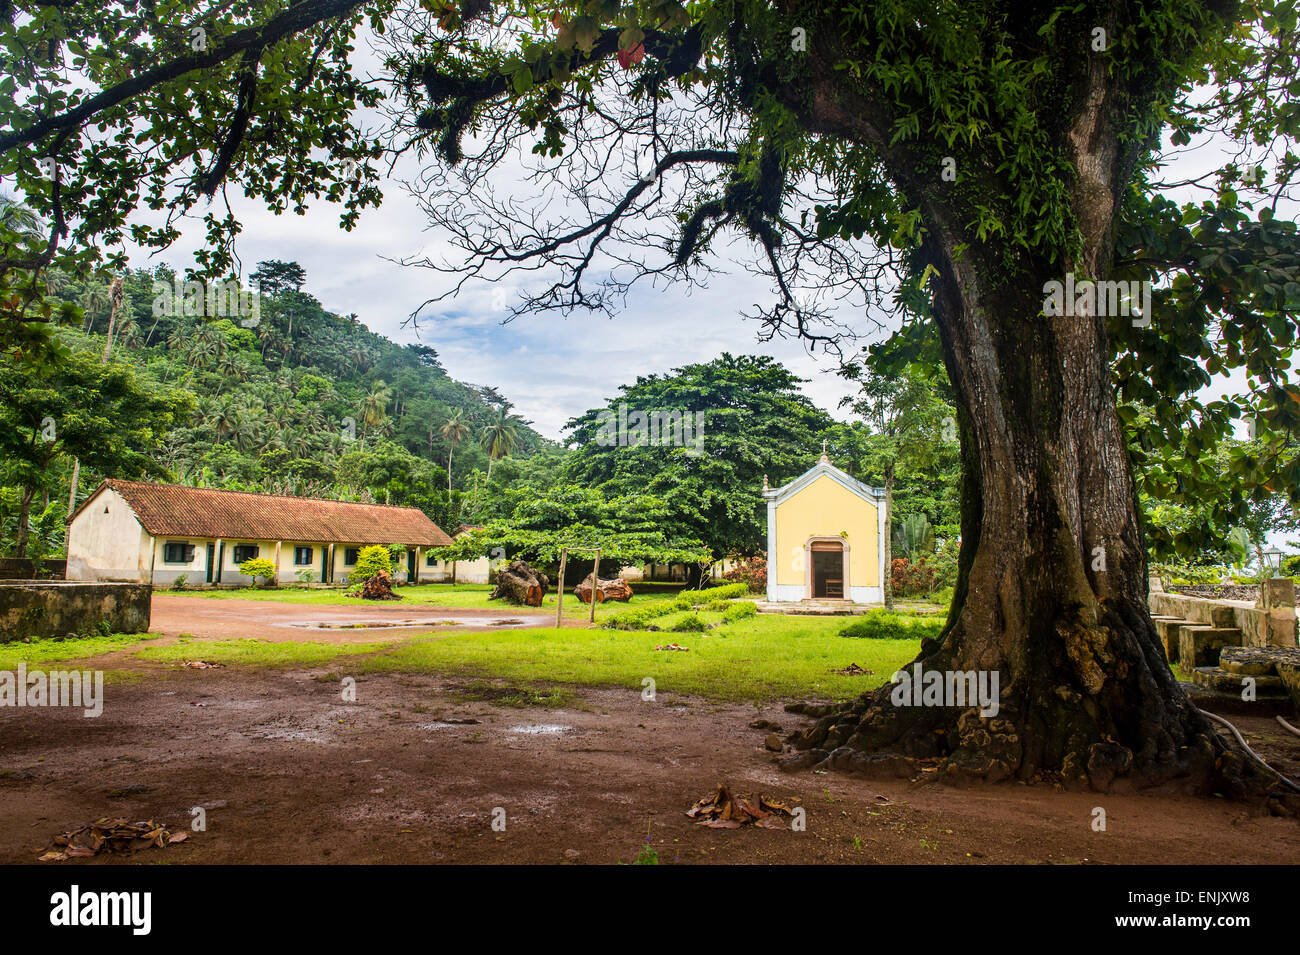 Vieille plantation Roca avec une petite chapelle, Islote das Rolas, Sao Tomé-et-Principe, Océan Atlantique, Afrique Banque D'Images